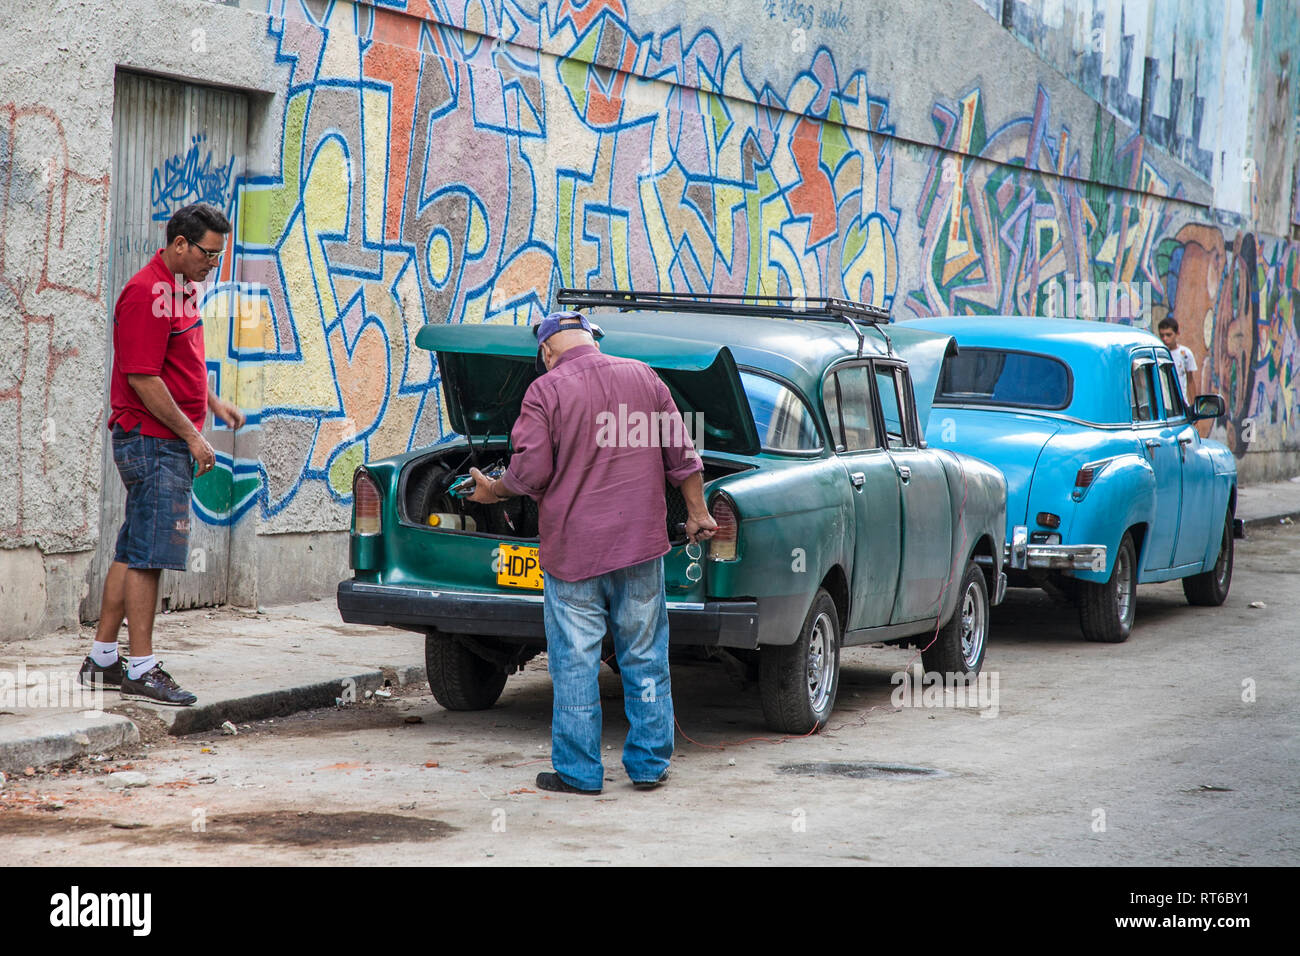 Havanna, Kuba - 24. Januar 2013: In den Straßen von Havanna, sehr alte amerikanische Autos auf den Straßen und Pferd - Reisebusse mit Touristen gezeichnet. Zwei Männer über Springen - s Stockfoto